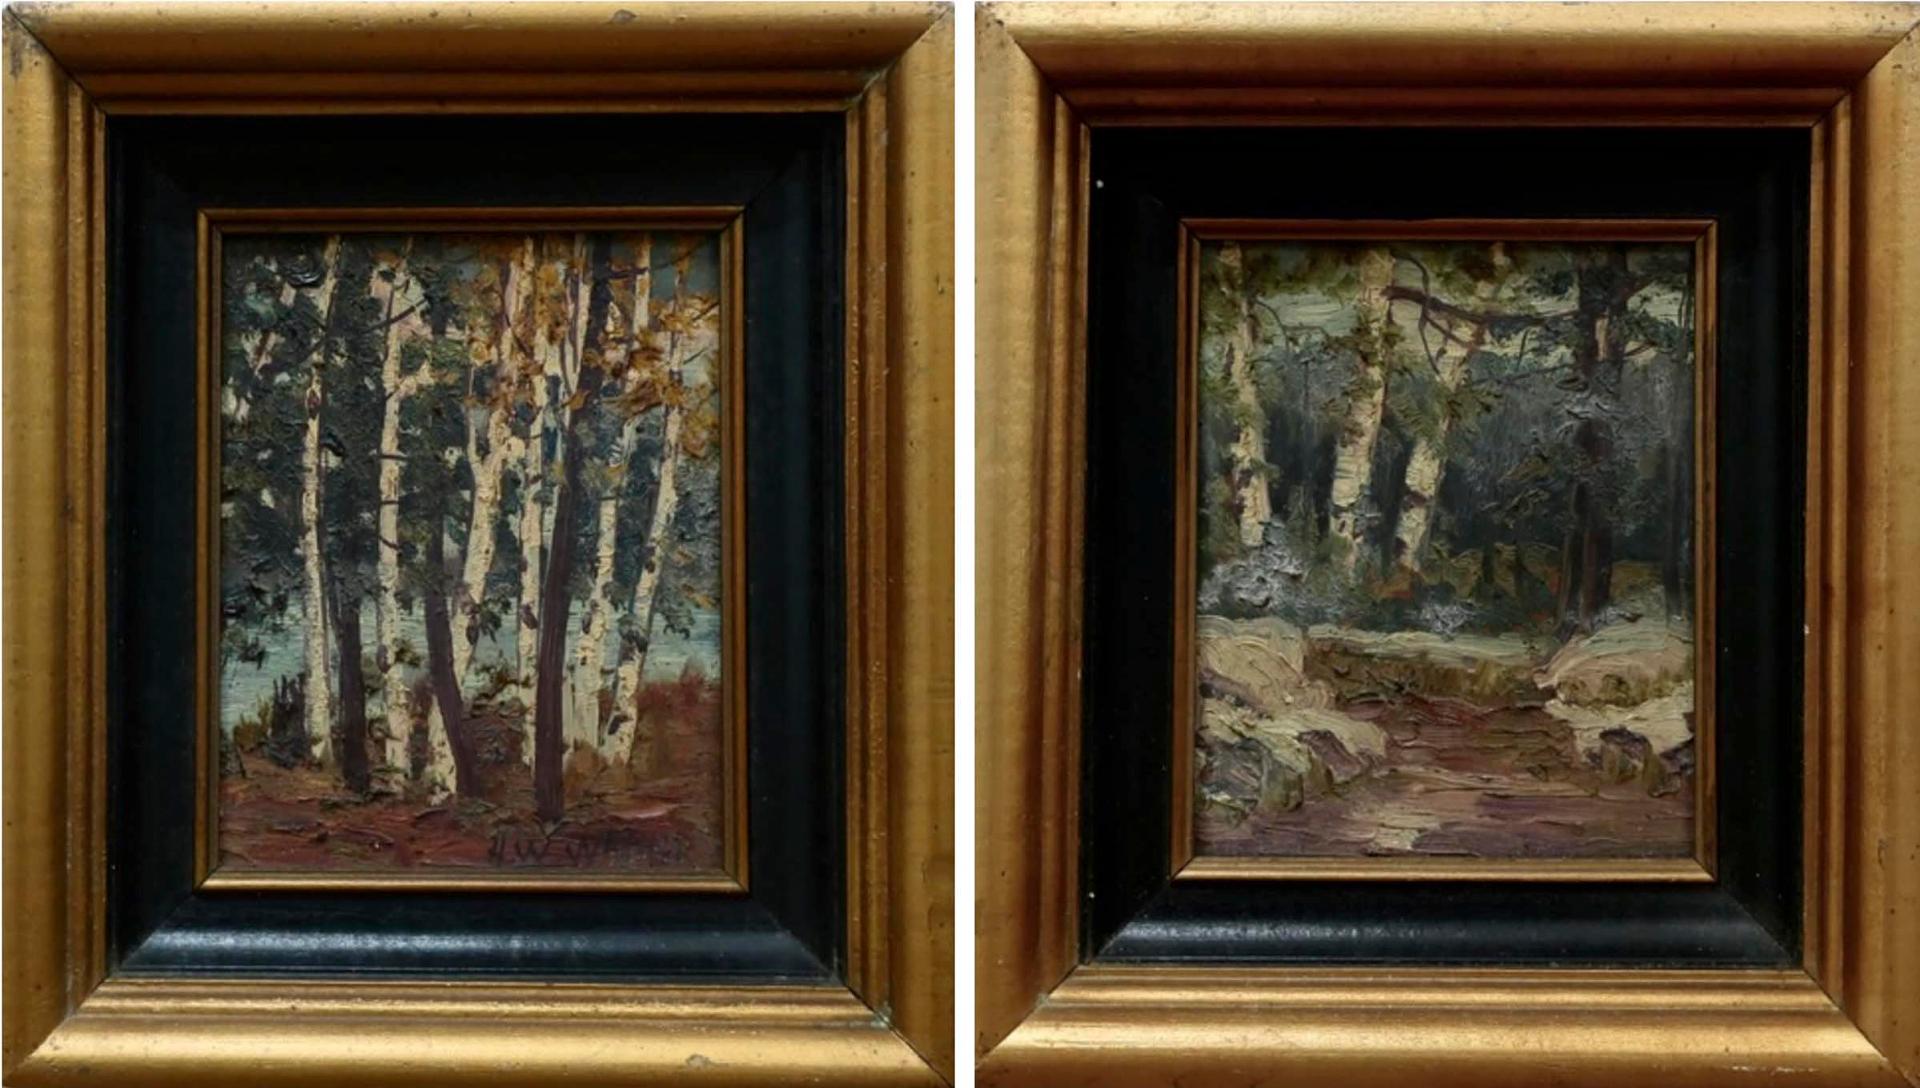 Herbert William Wagner (1889-1948) - Birch Tree Studies